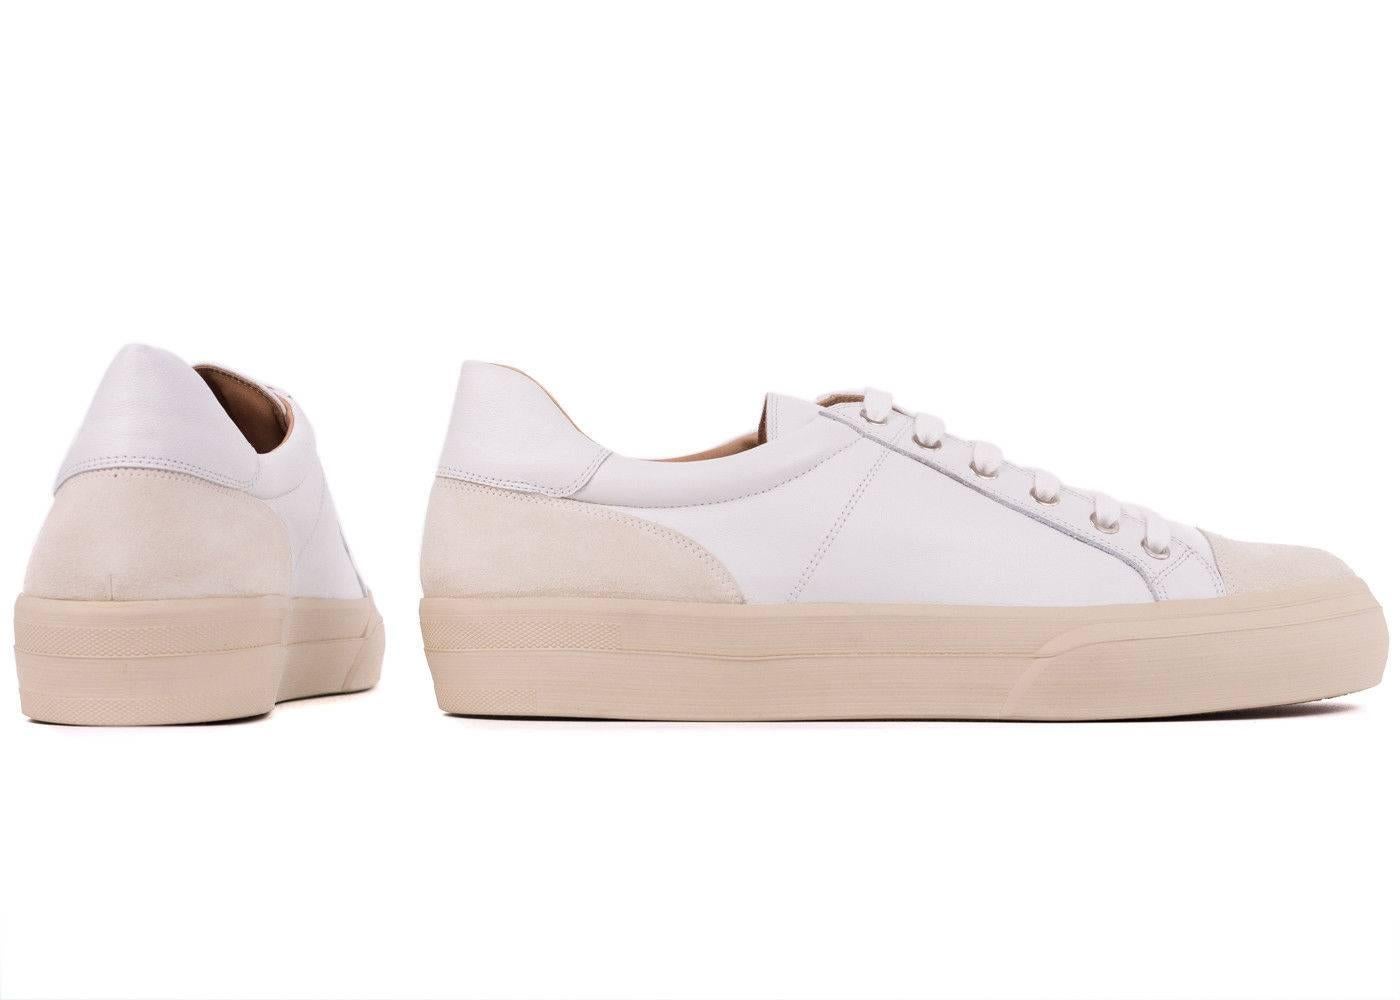 Dries Van Noten Men's White Leather Low Top Cap Toe Sneakers For Sale 1